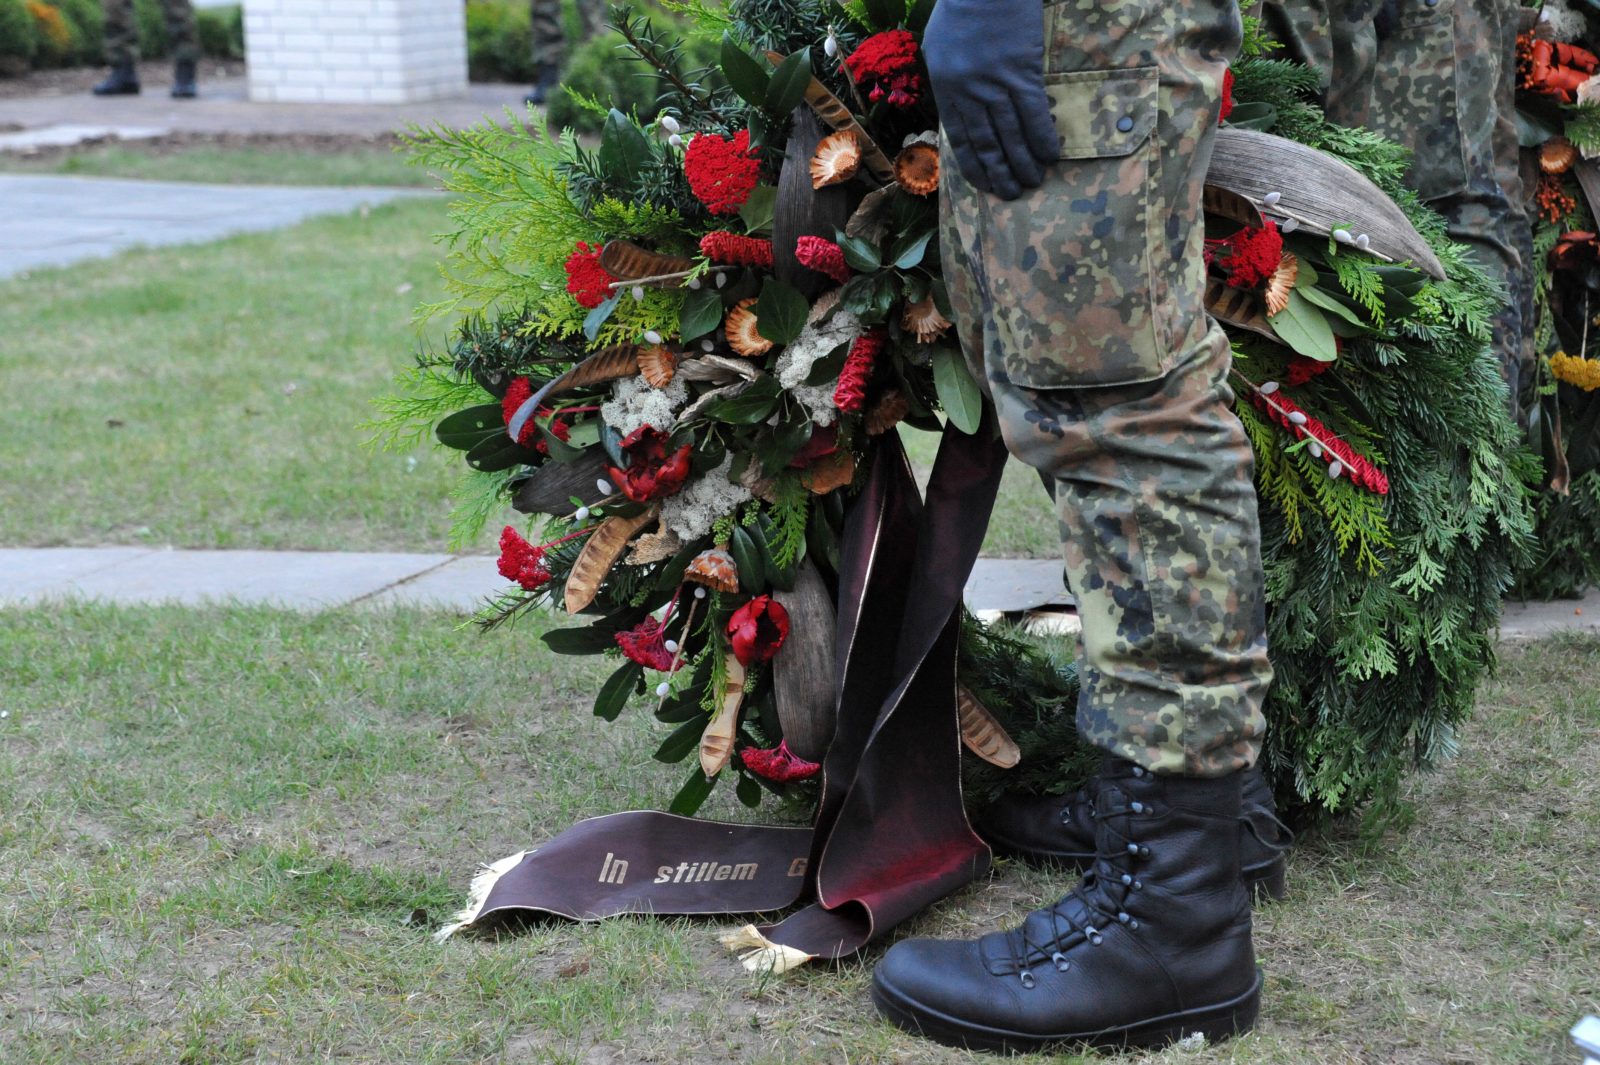 Soldat mit Grabkranz: Mit dem öffentlichen Gedenken an gefallene Bundeswehrsoldaten tut sich die SPD schwer (Symbolbild) Foto: picture alliance